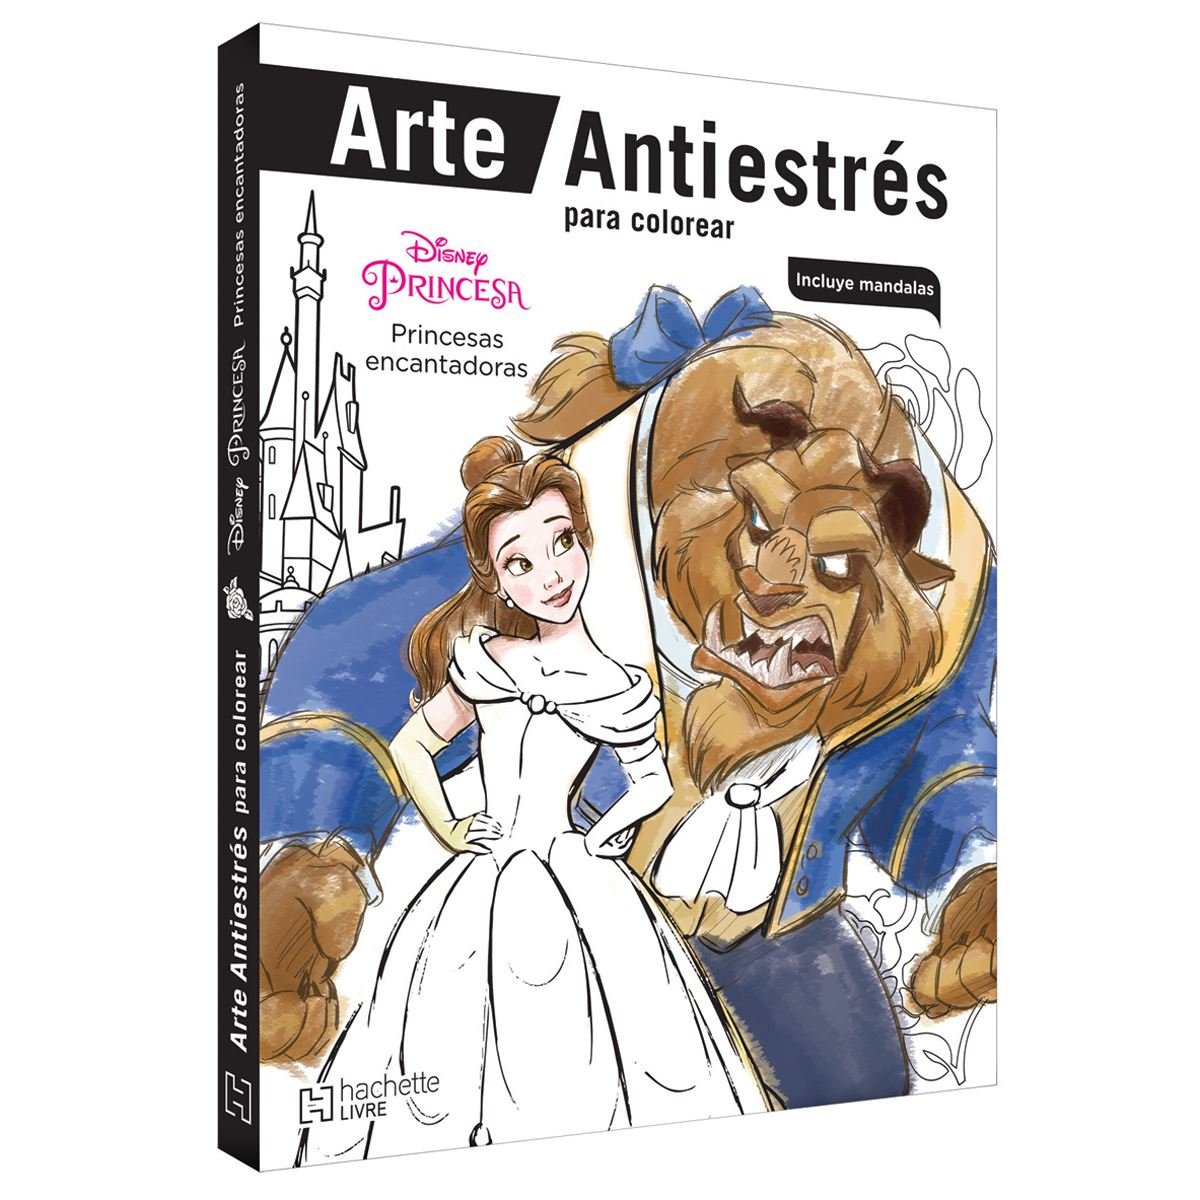 Dibujos para colorear de princesas: Libro para colorear para niñas y niños  de 4 a 8 años o preescolar y primaria l Cuaderno con 50 dibujos de